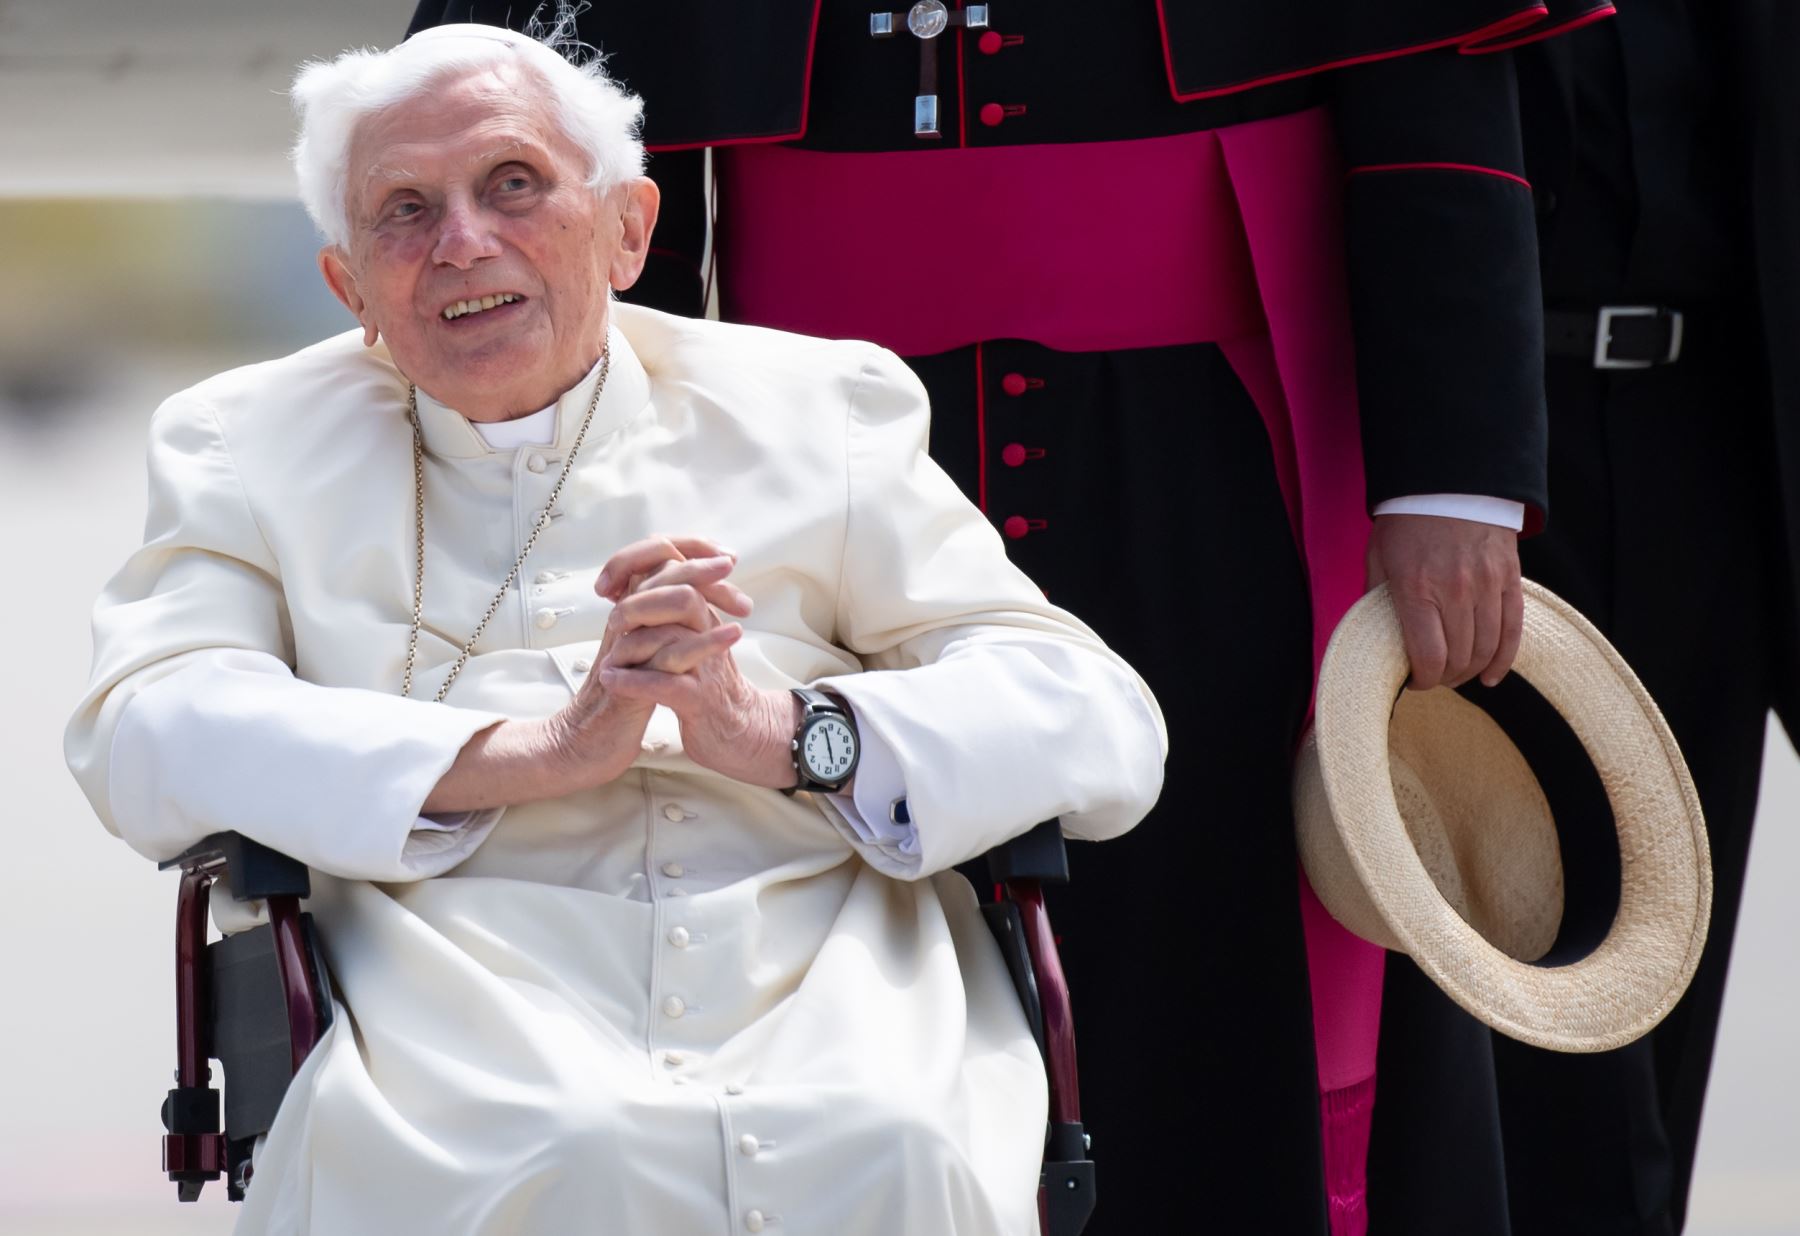 Según el diario Passauer Neue Presse, Benedicto XVI sufre una erisipela en el rostro, una enfermedad infecciosa caracterizada por una tumefacción rojiza que genera fuerte picor y dolores intensos. Foto: AFP